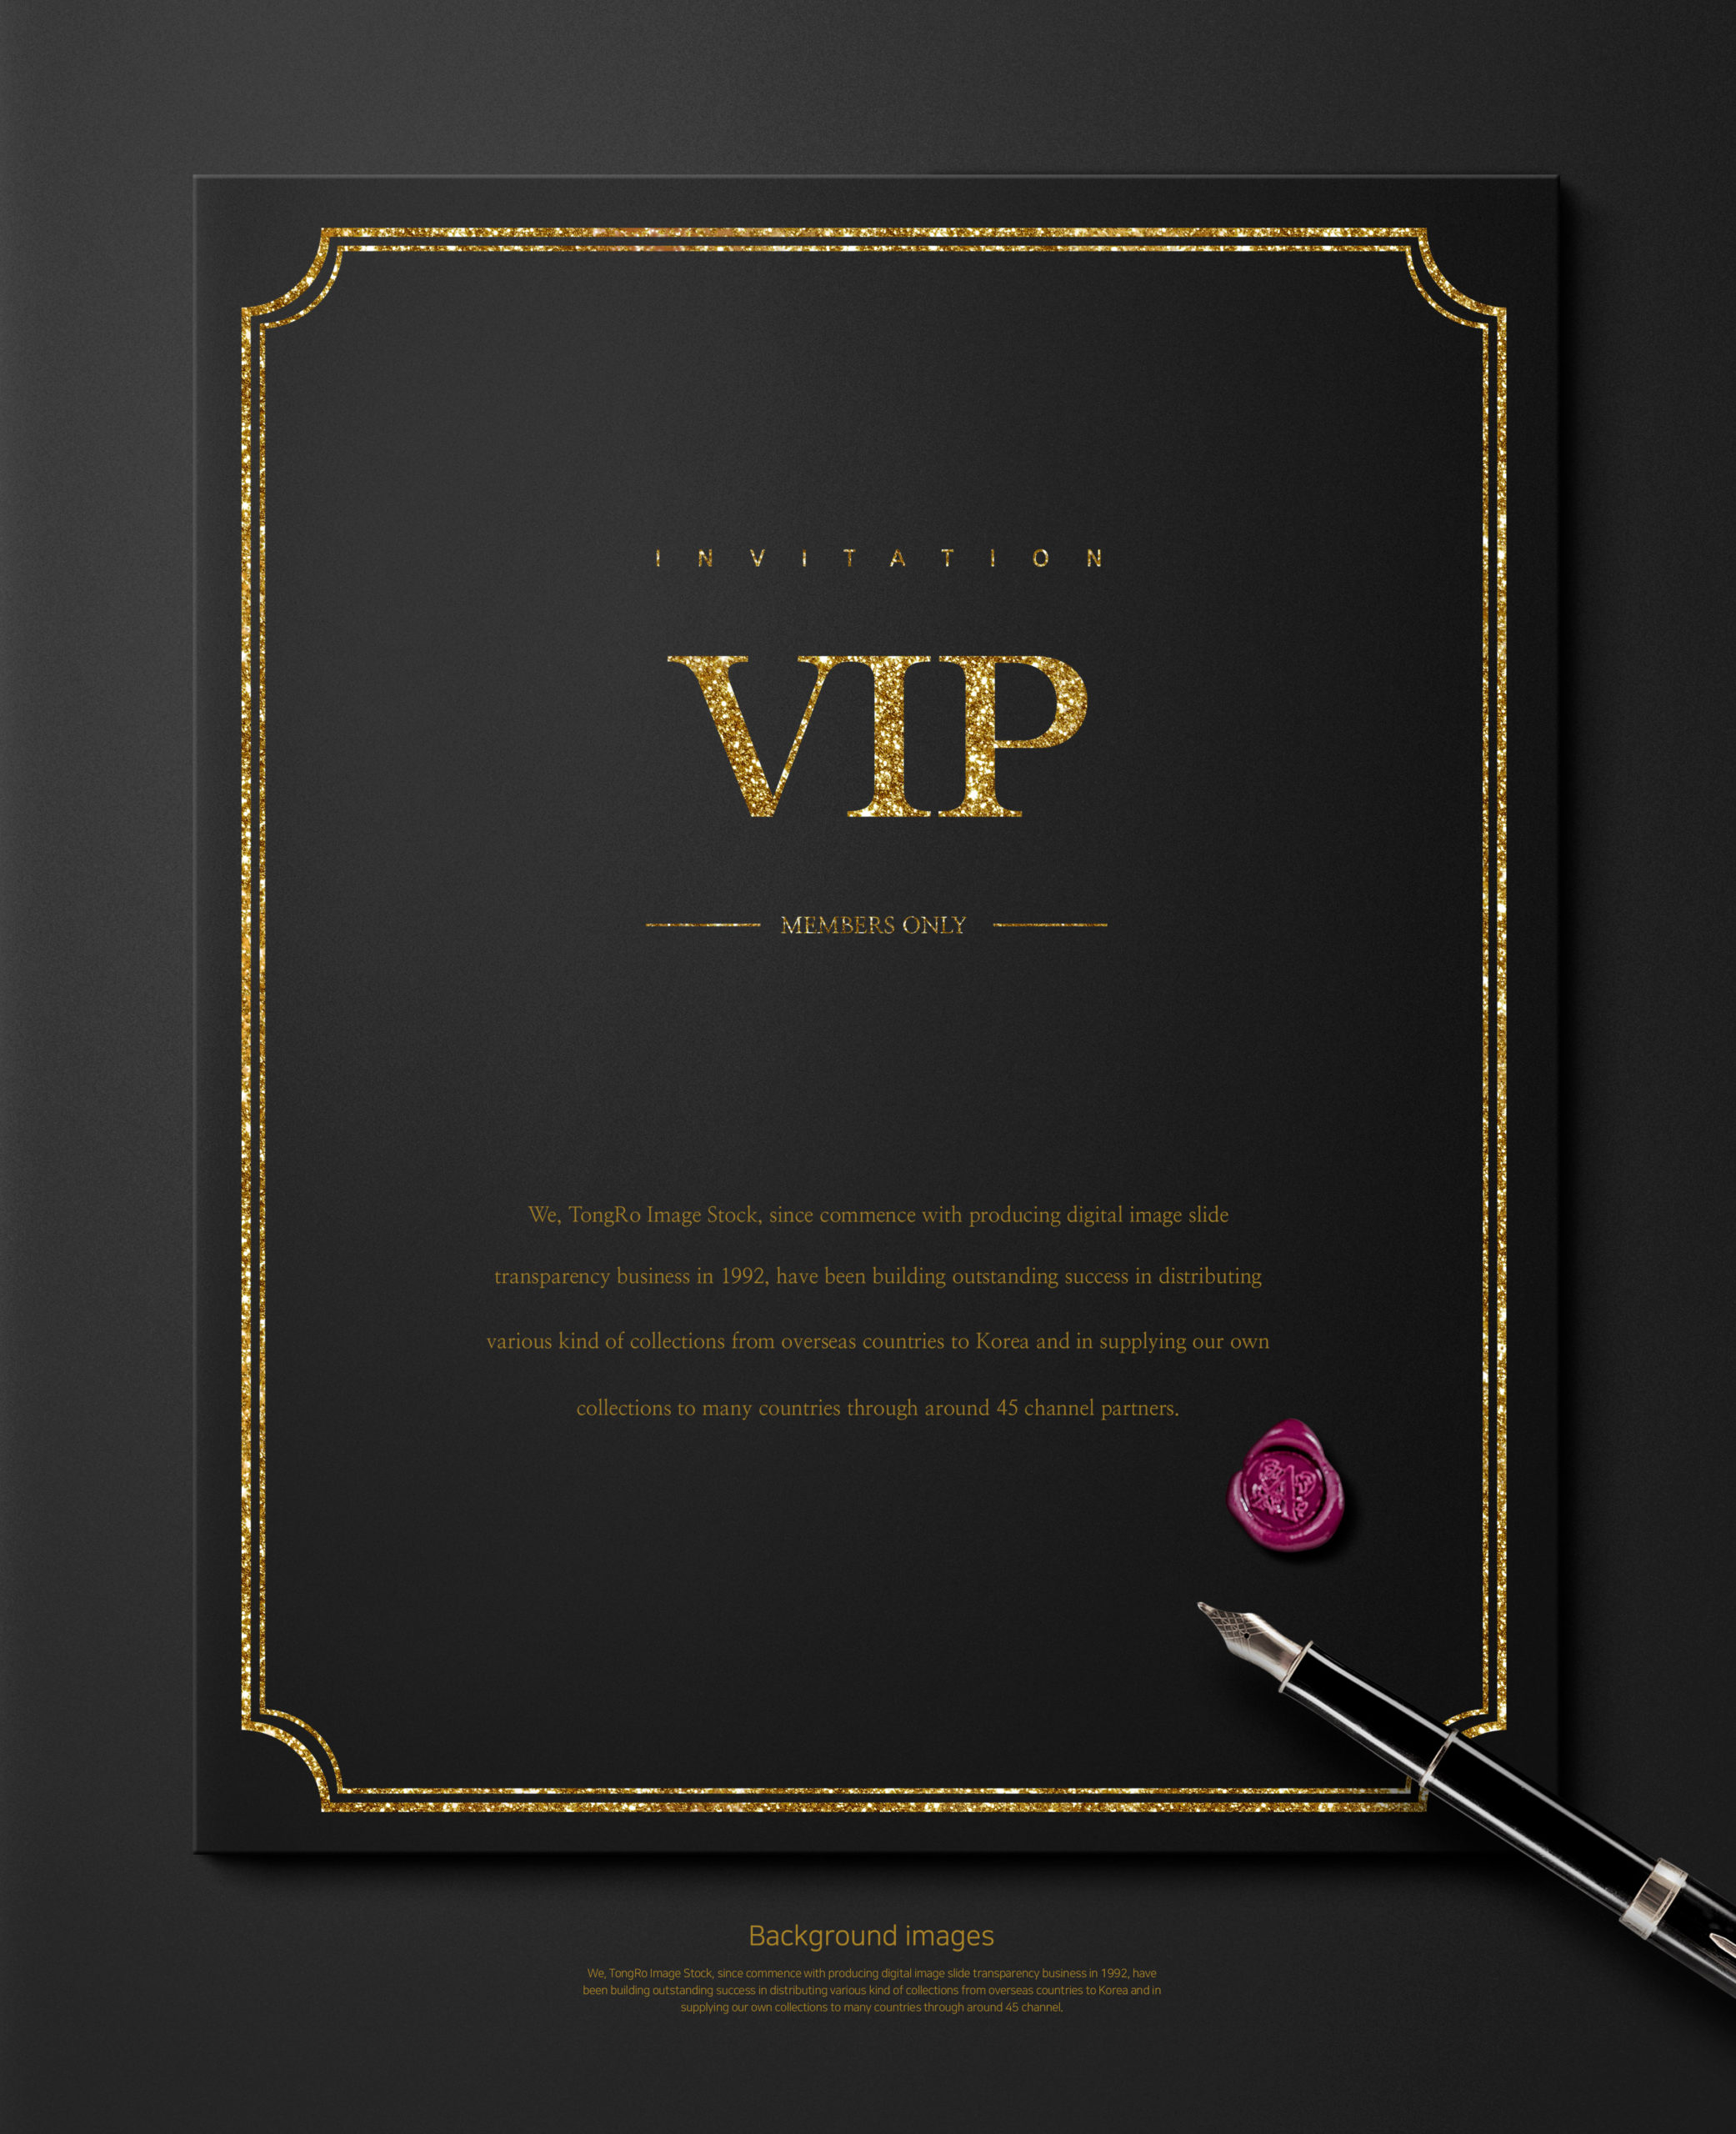 高端豪华风格VIP贵宾邀请邀请函海报背景图片套装[PSD]插图(1)